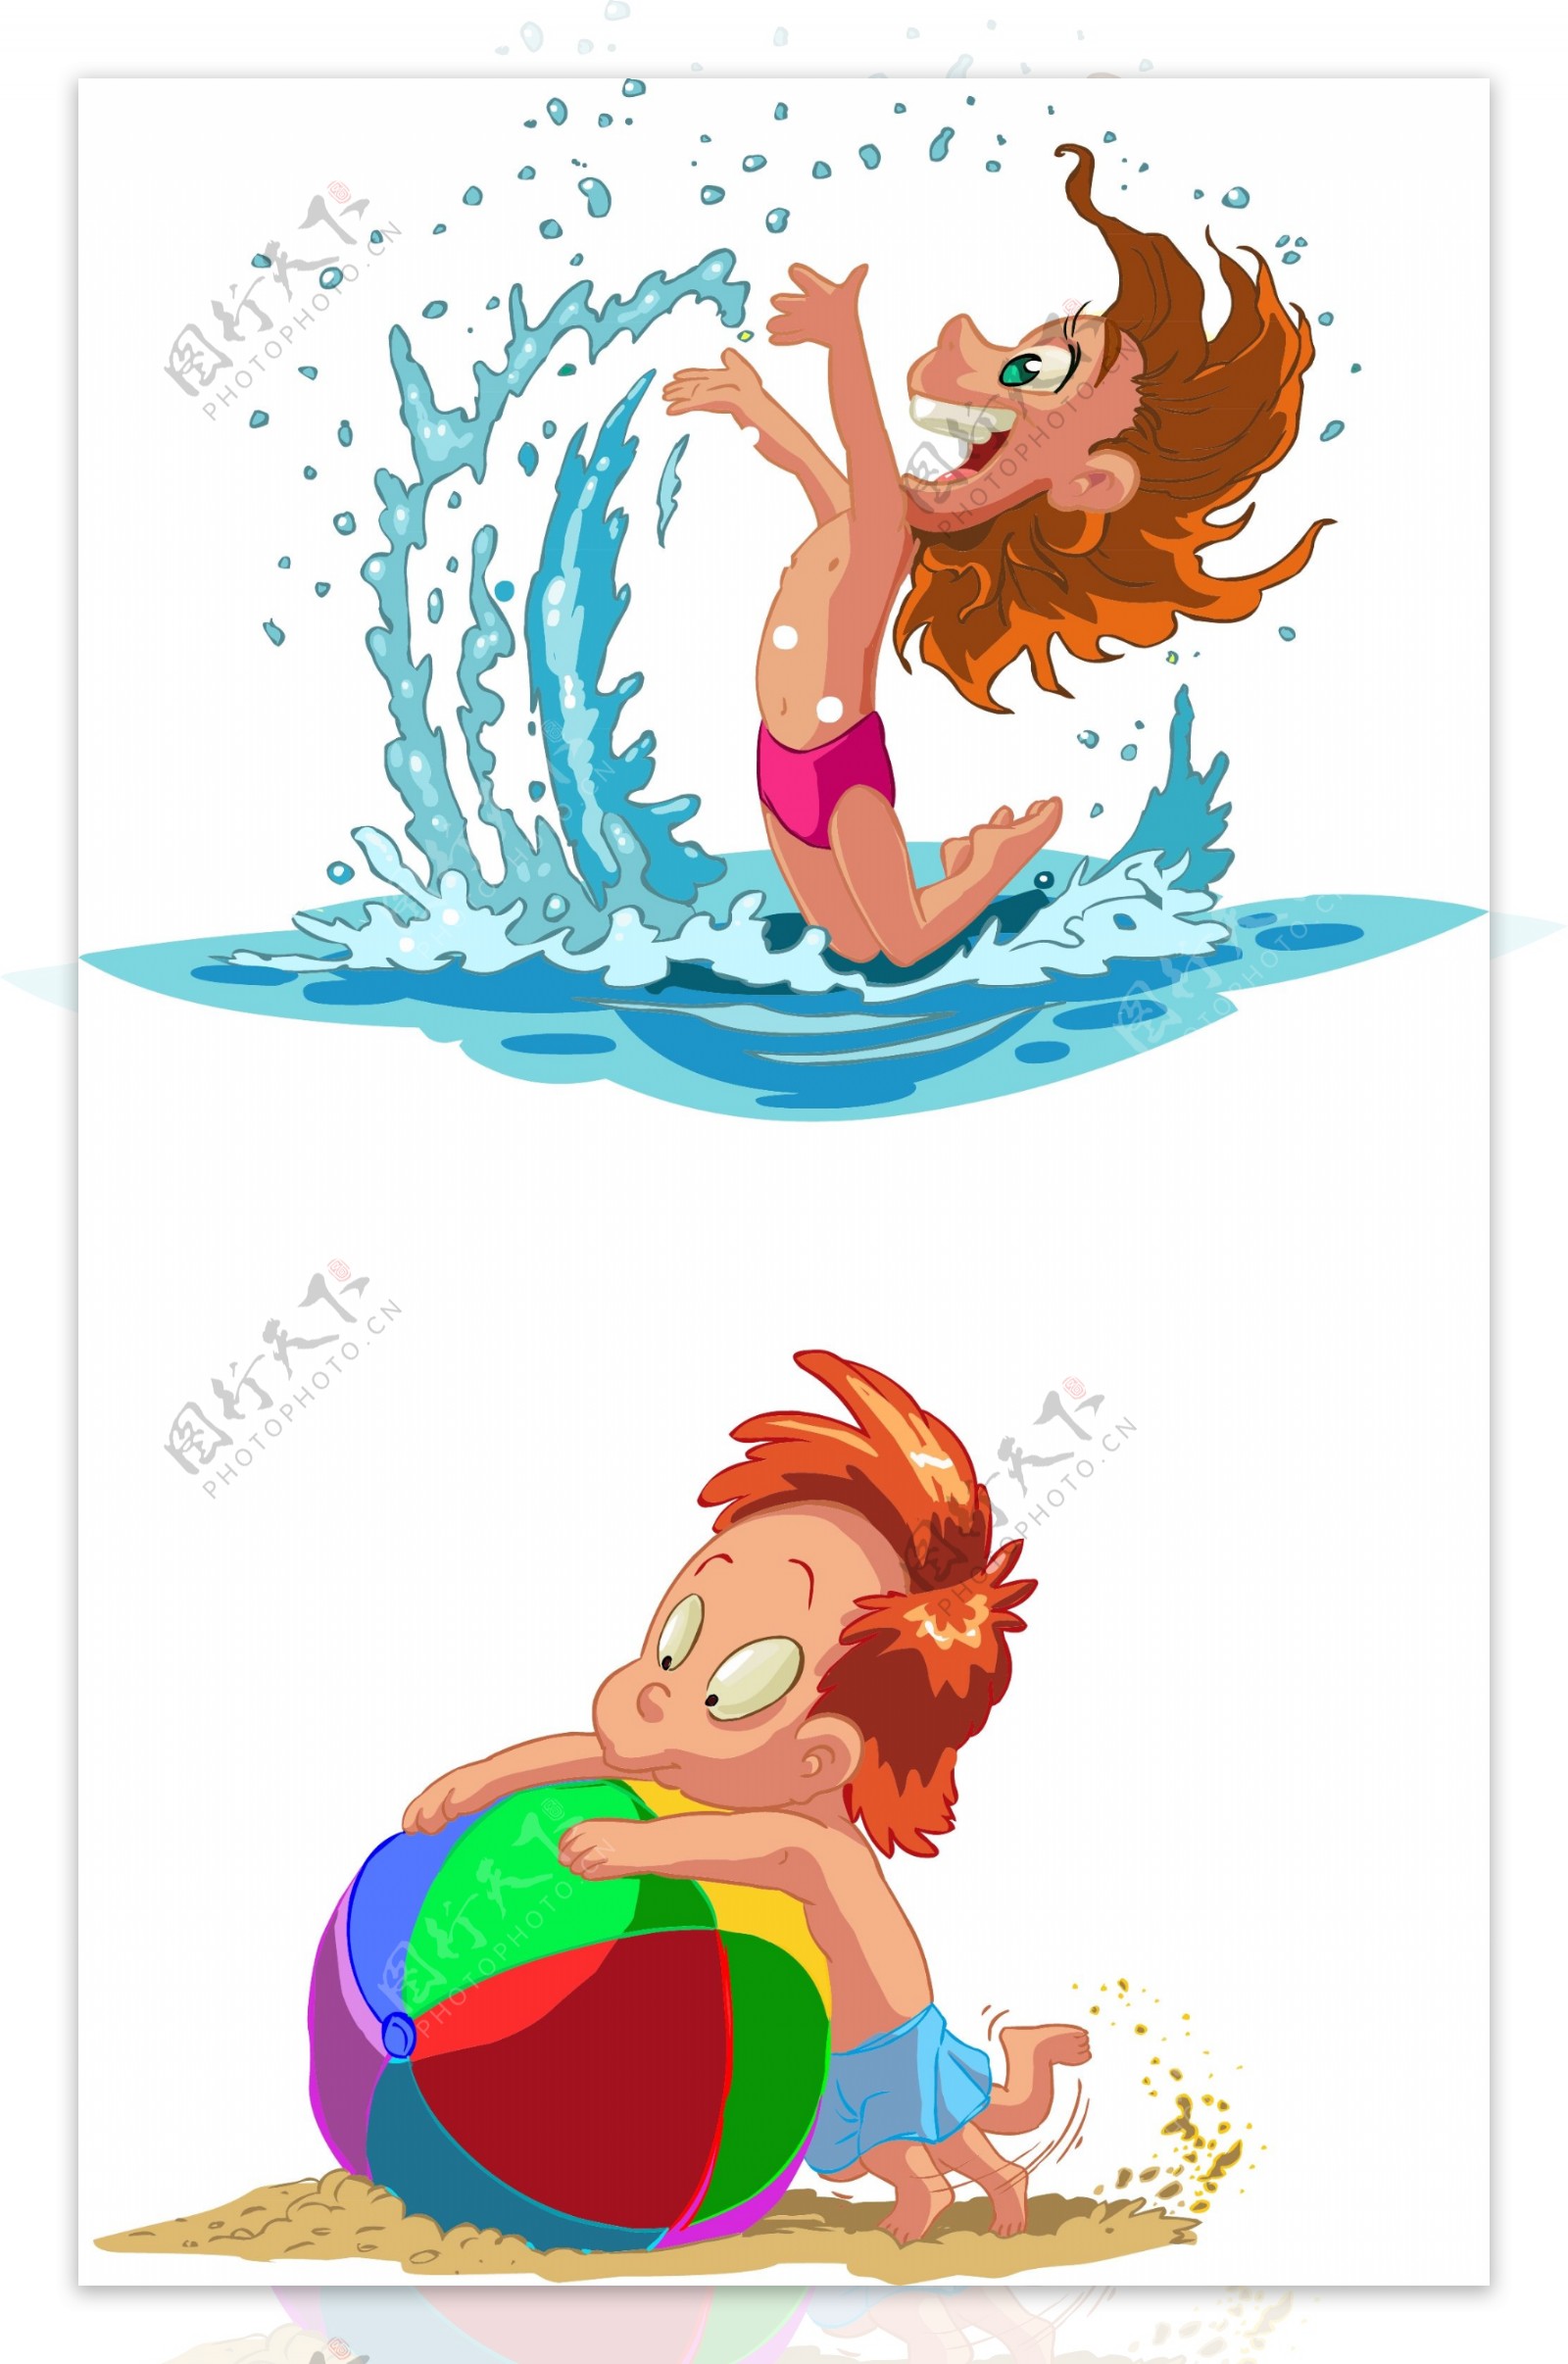 夏季儿童游泳